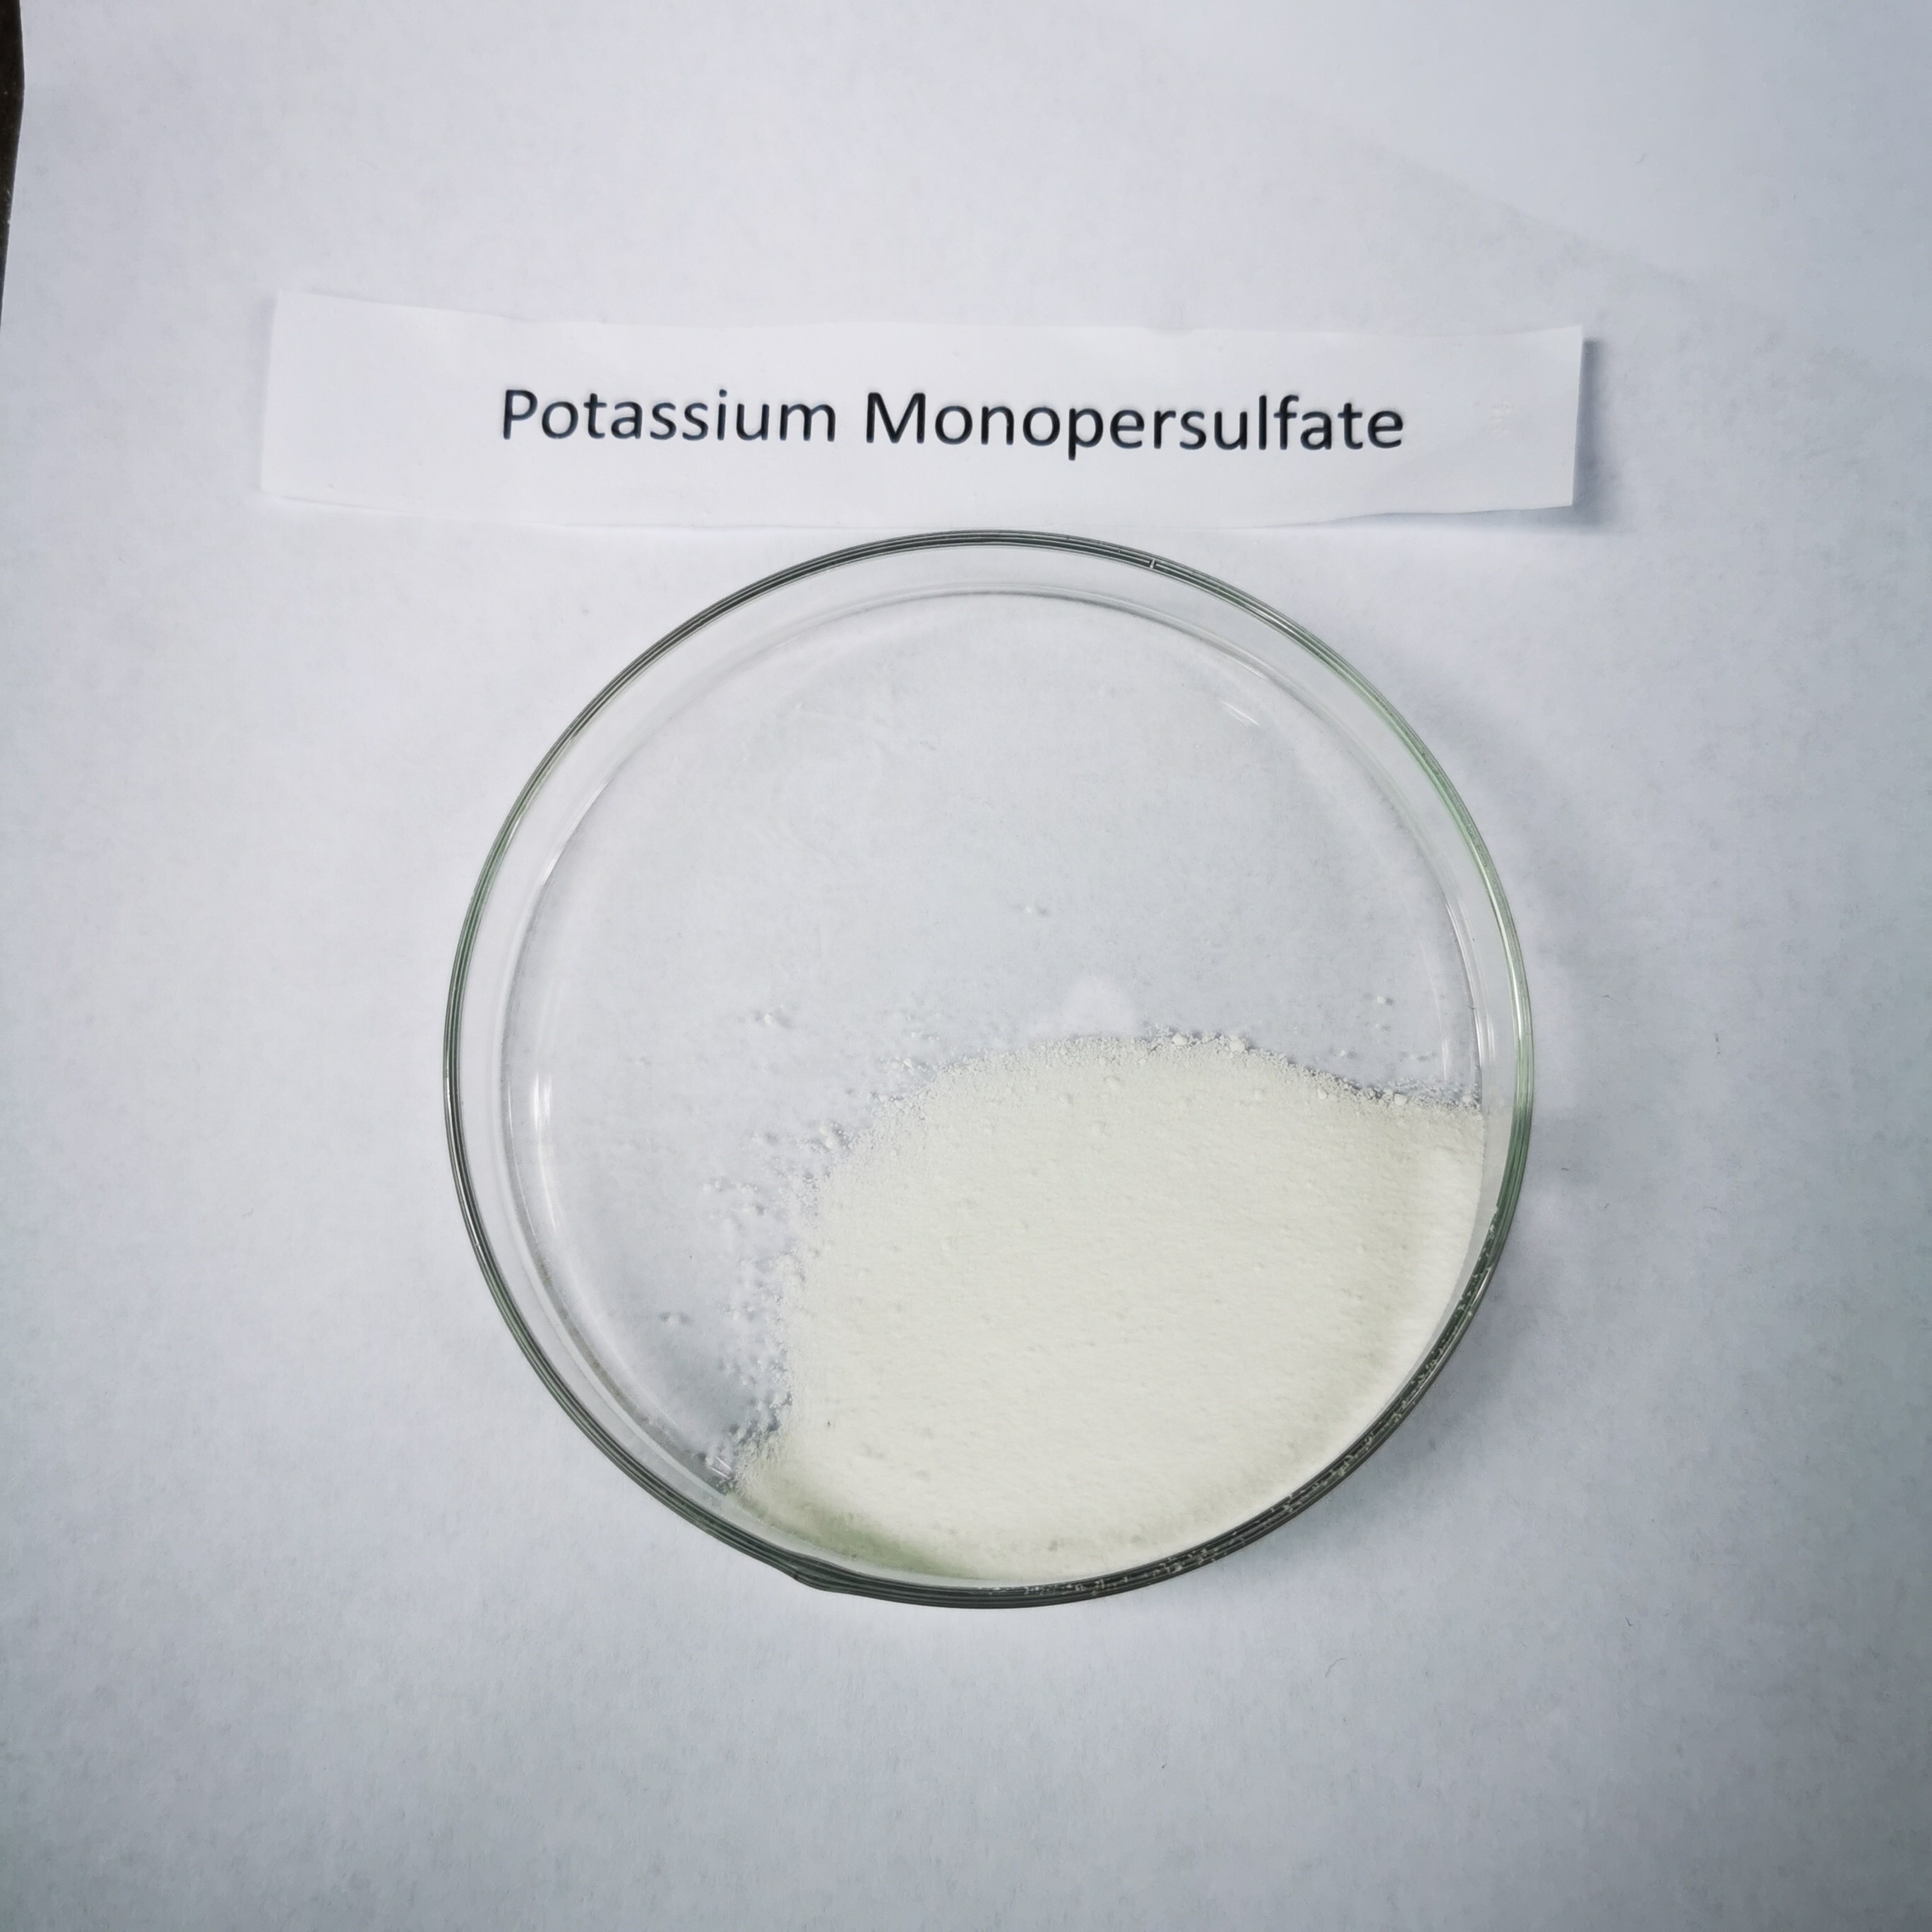 شوک مبتنی بر نمک پتاسیم پراکسیمونوسولفوریک اسید غیر کلر بر پایه صنعت آبگرم